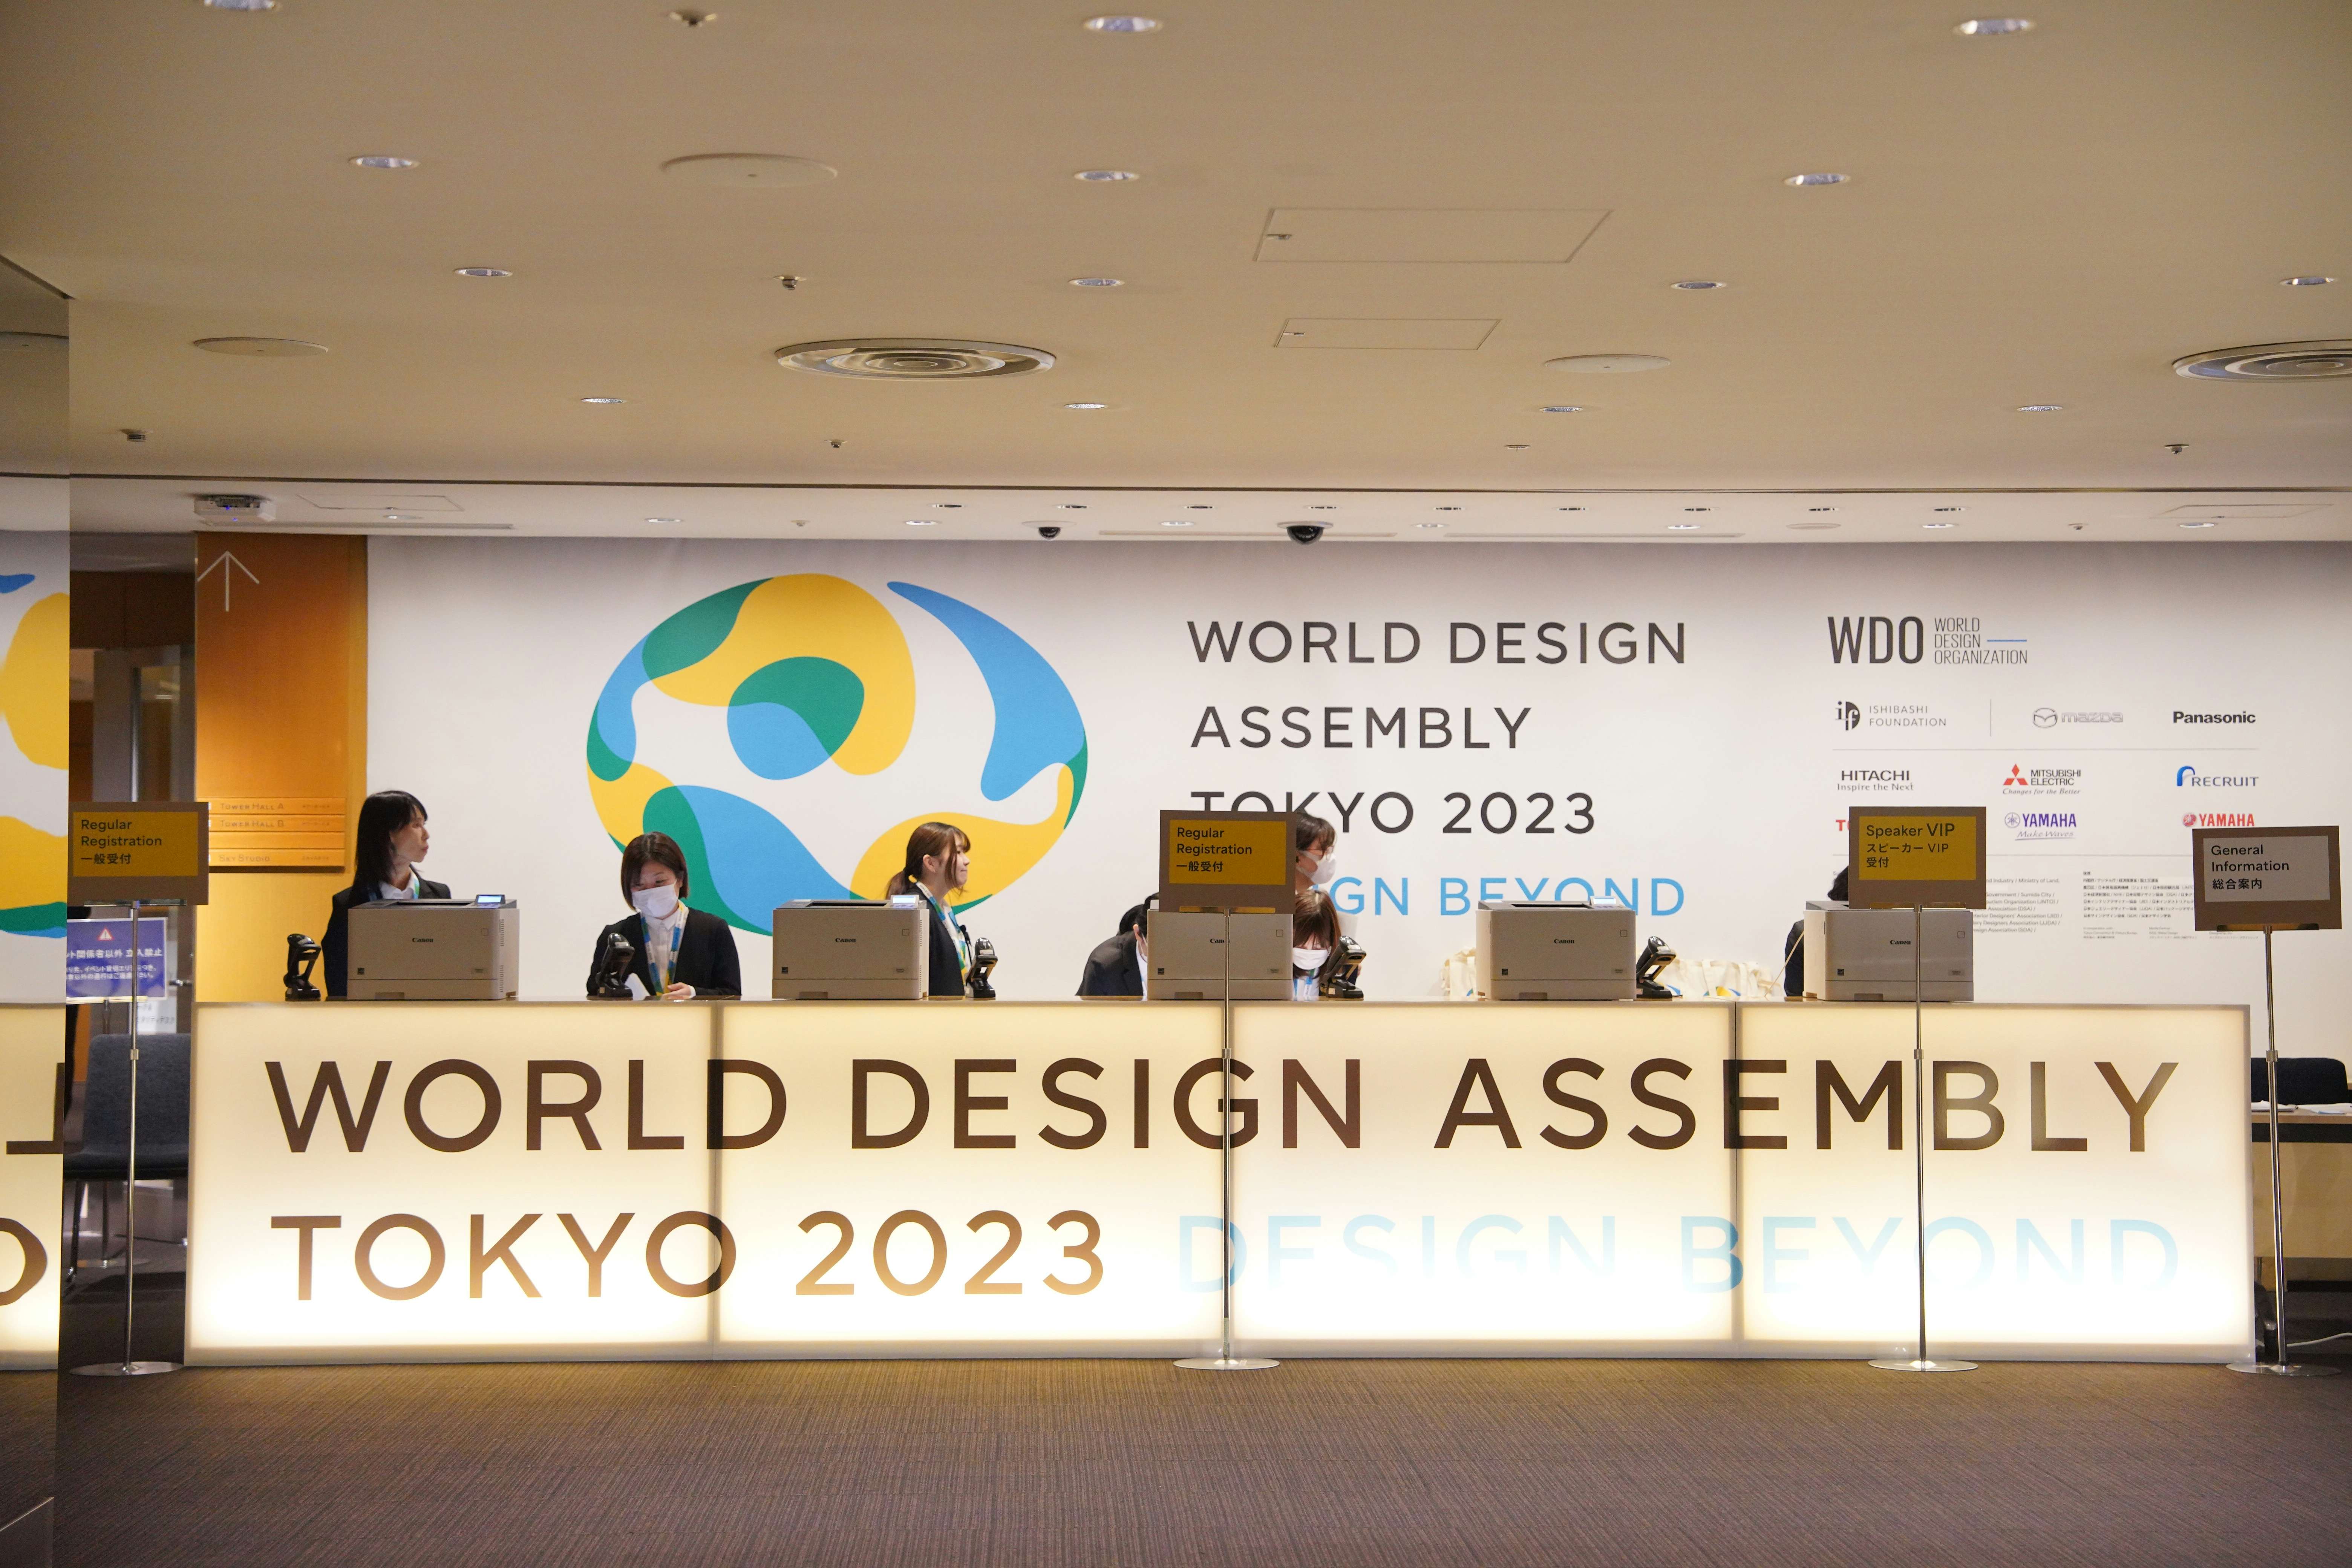 34年ぶり日本開催の「WDO 世界デザイン会議」。デザインはいかに社会や